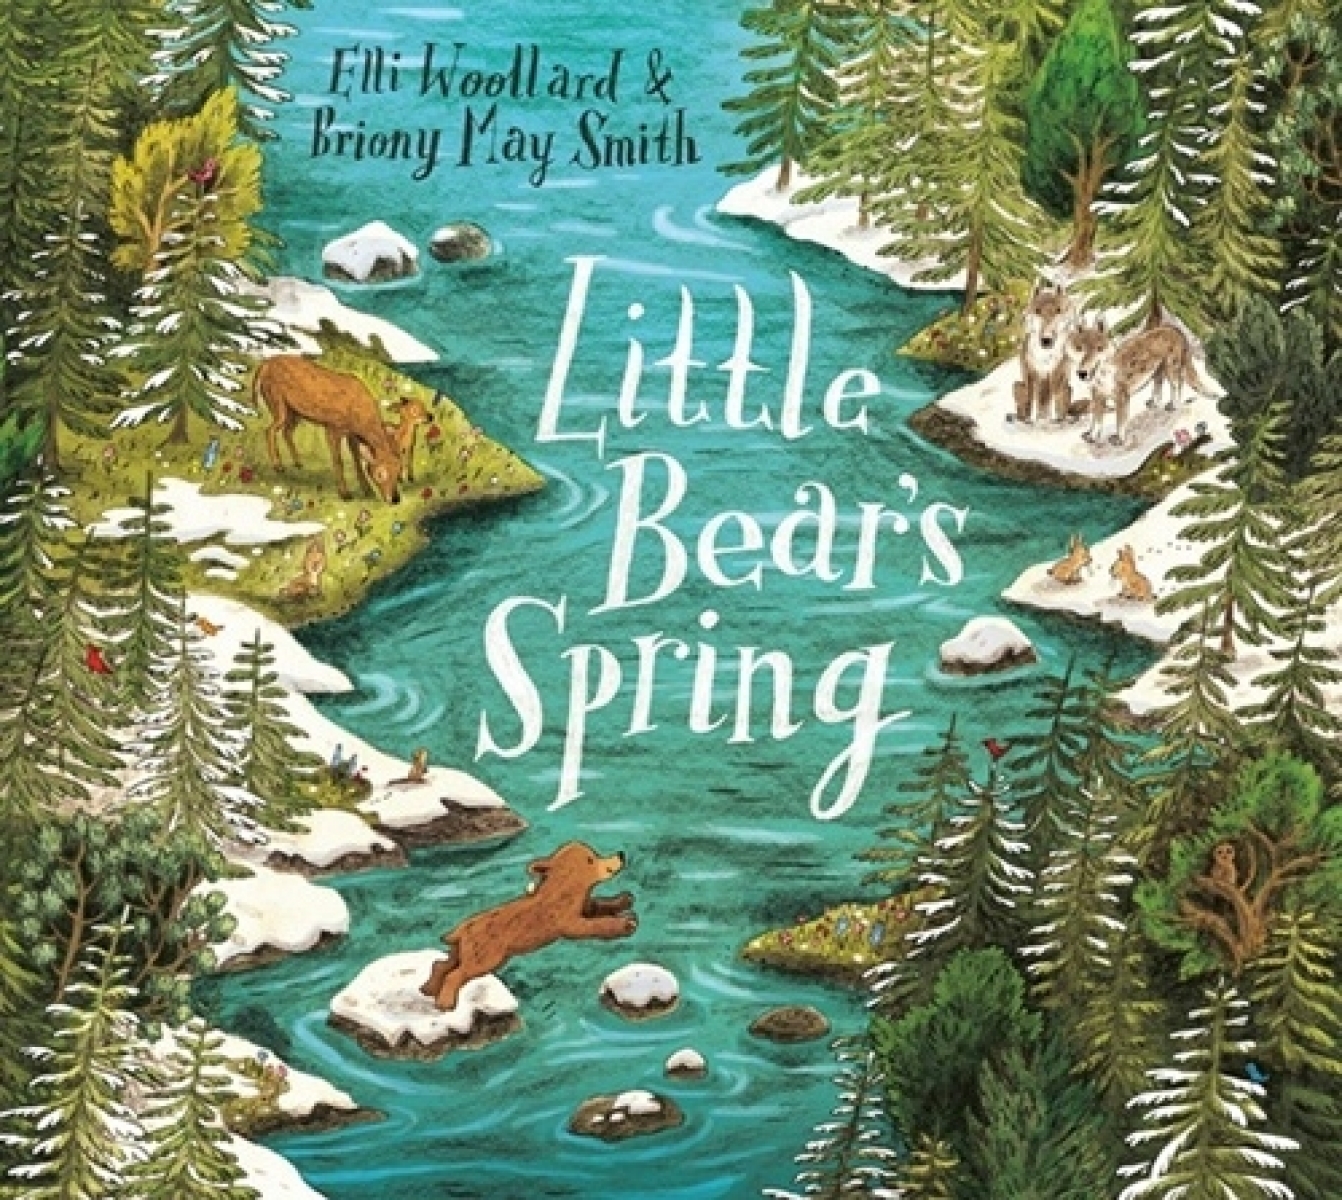 Woollard Elli Little Bear's Spring 